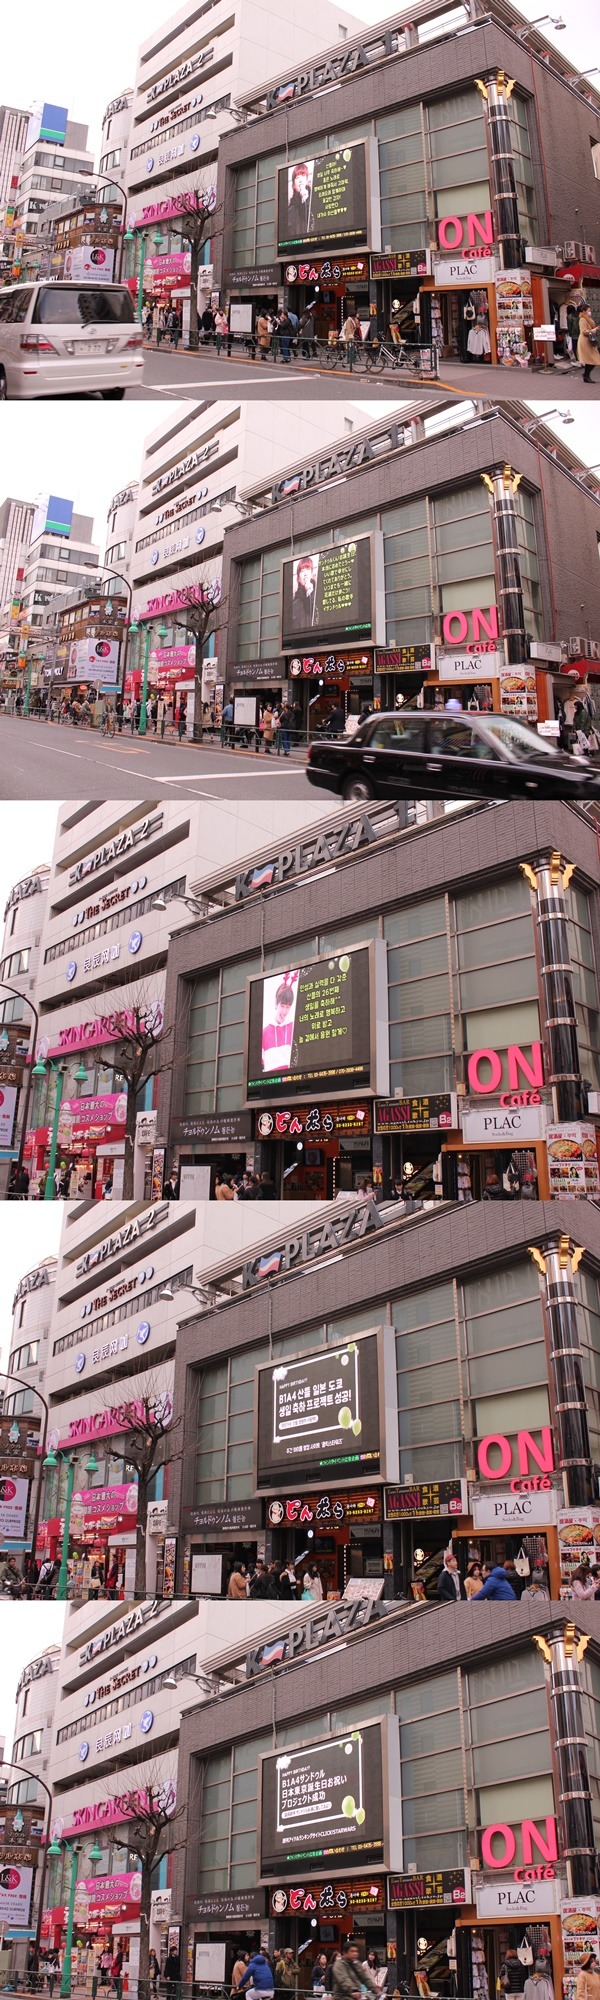 클릭스타워즈가 그룹 B1A4 산들 생일 전광판을 공개했다. 산들의 생일을 축하하는 영상 상영은 한국과 일본에서 진행되고 있다. /클릭스타워즈 제공